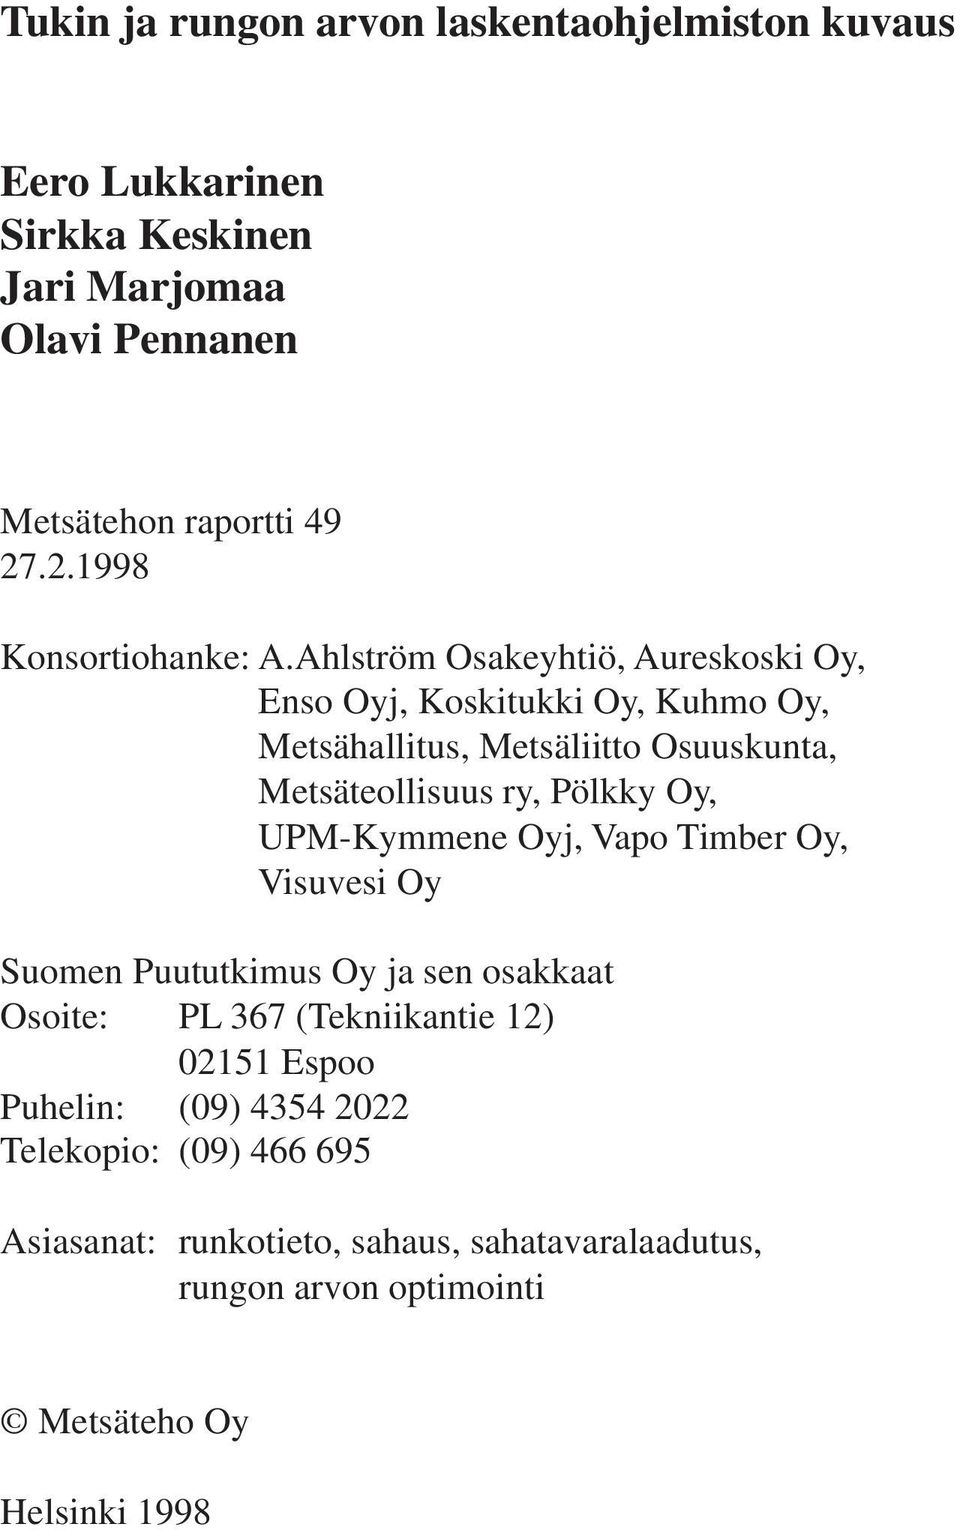 Ahlström Osakeyhtiö, Aureskoski Oy, Enso Oyj, Koskitukki Oy, Kuhmo Oy, Metsähallitus, Metsäliitto Osuuskunta, Metsäteollisuus ry, Pölkky Oy,